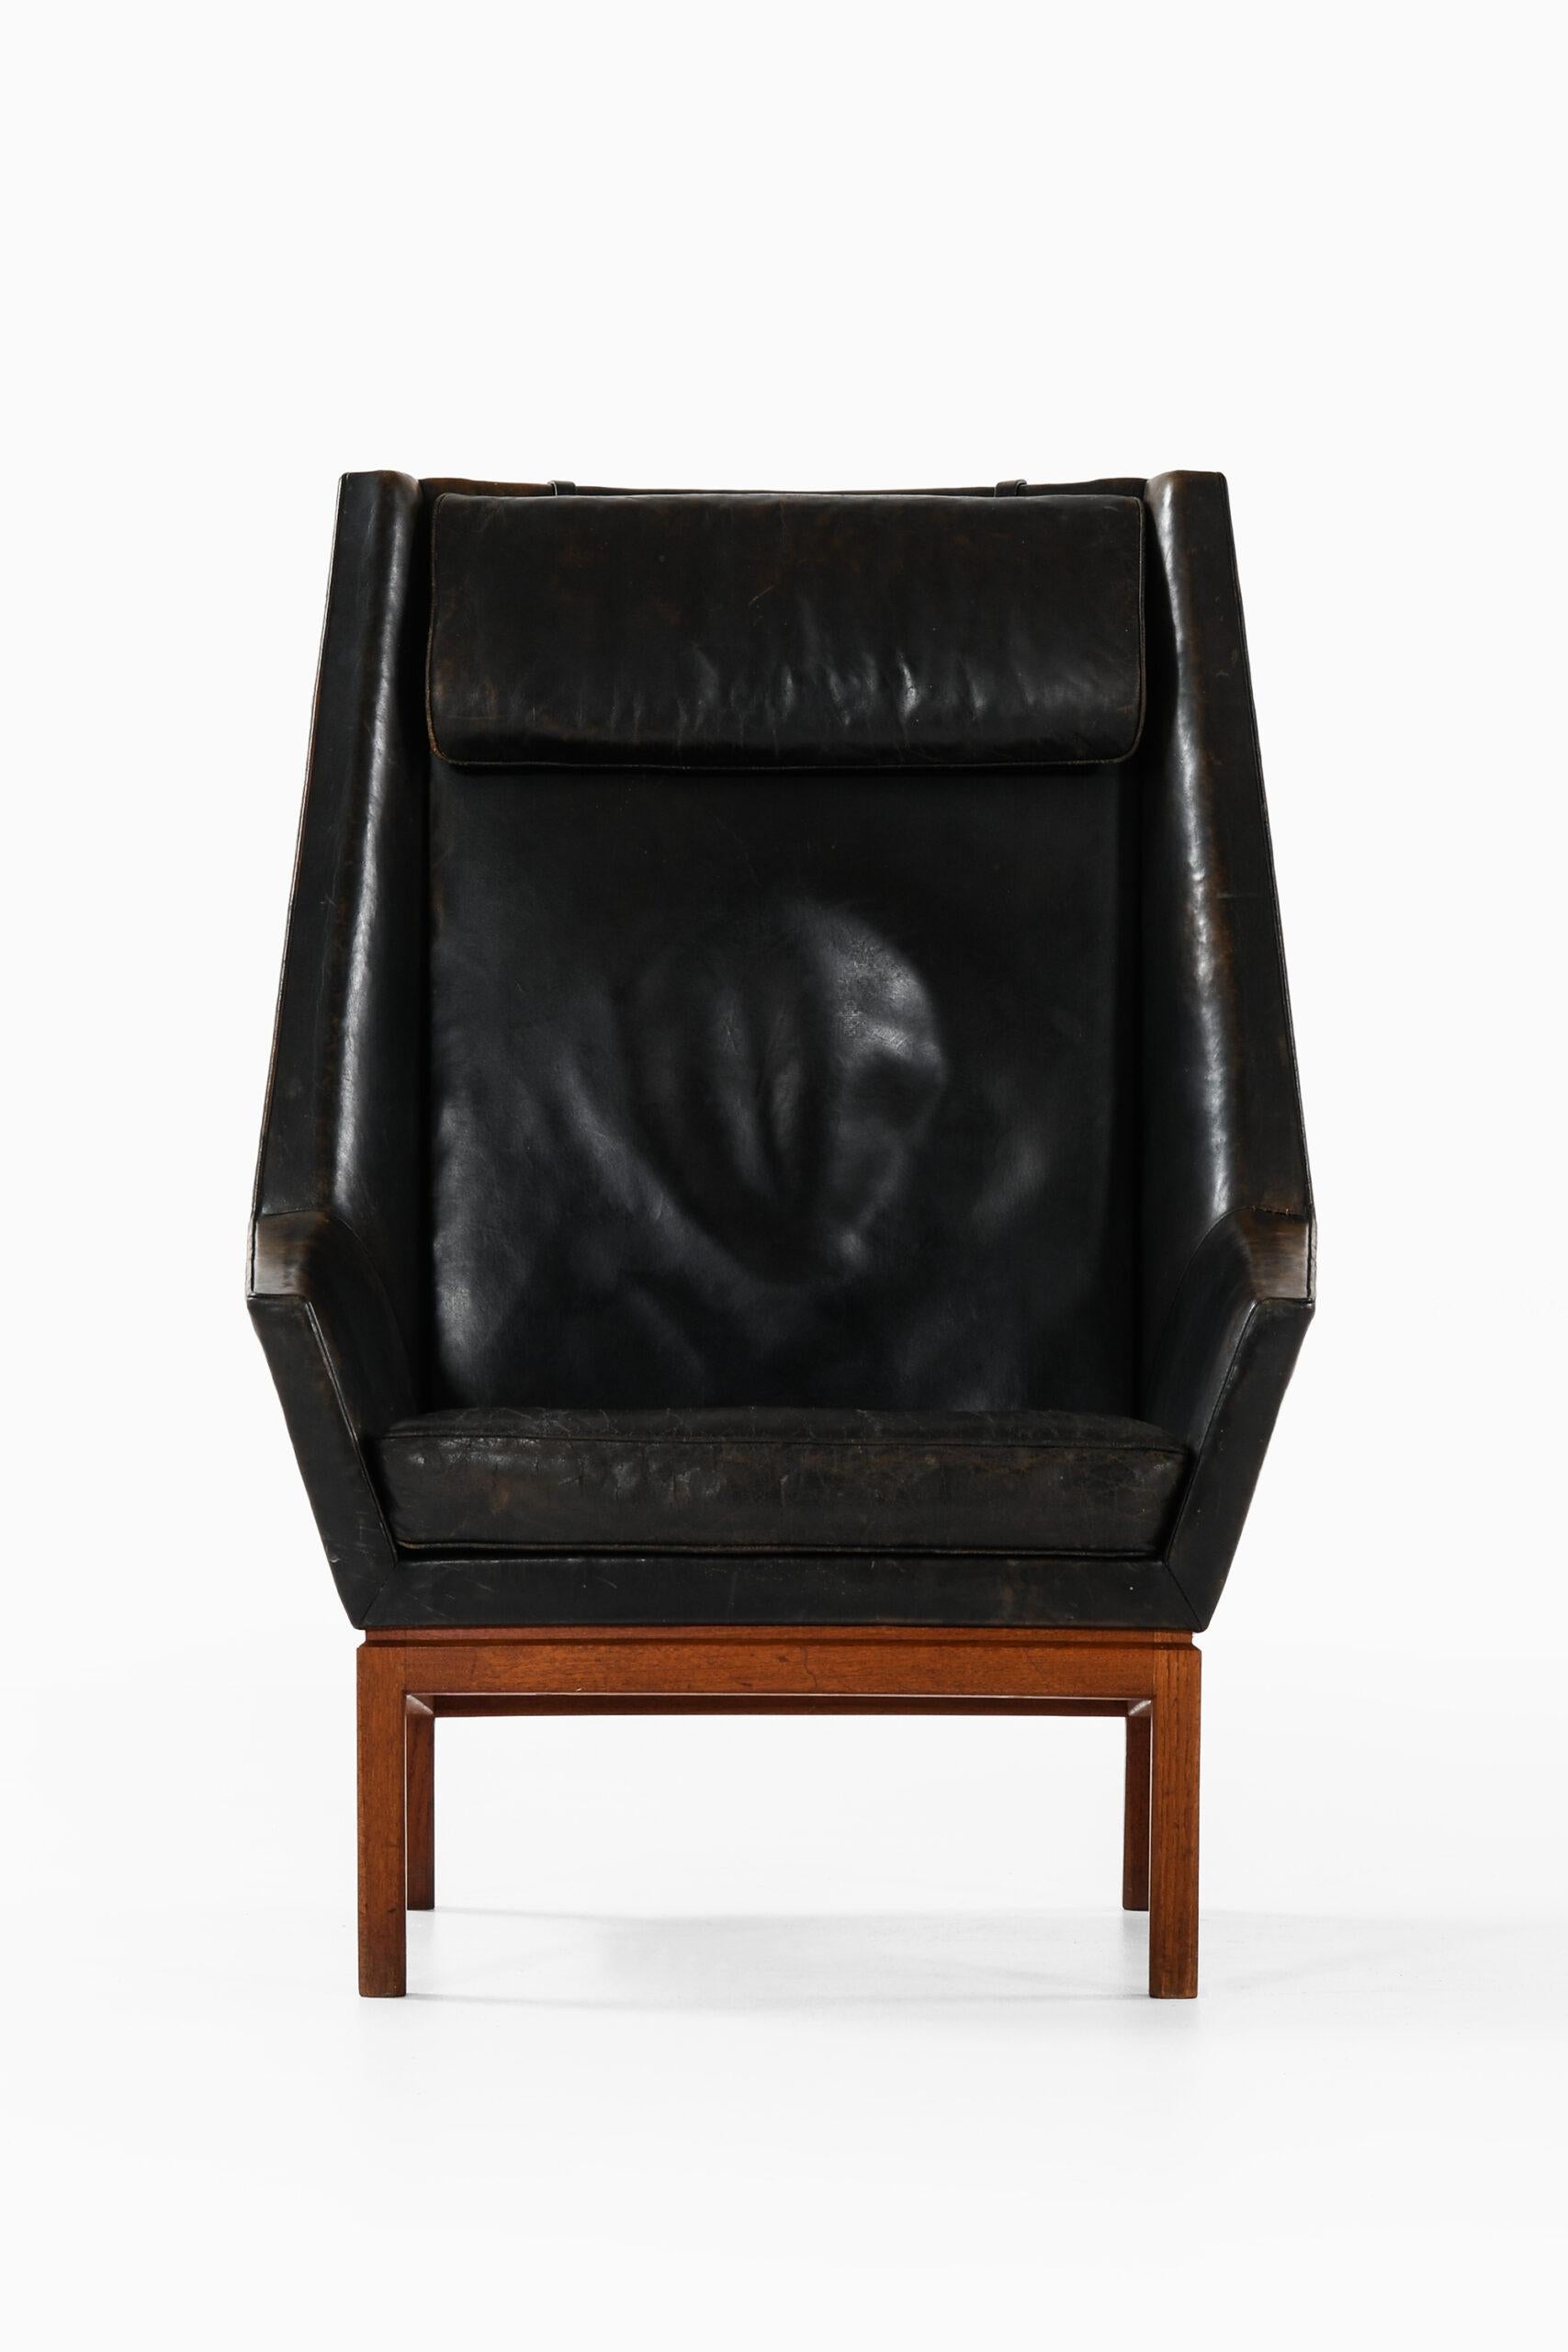 Seltener Sessel mit hoher Rückenlehne, entworfen von Erik Kolling Andersen. Hergestellt vom Tischler Peder Pedersen in Dänemark.